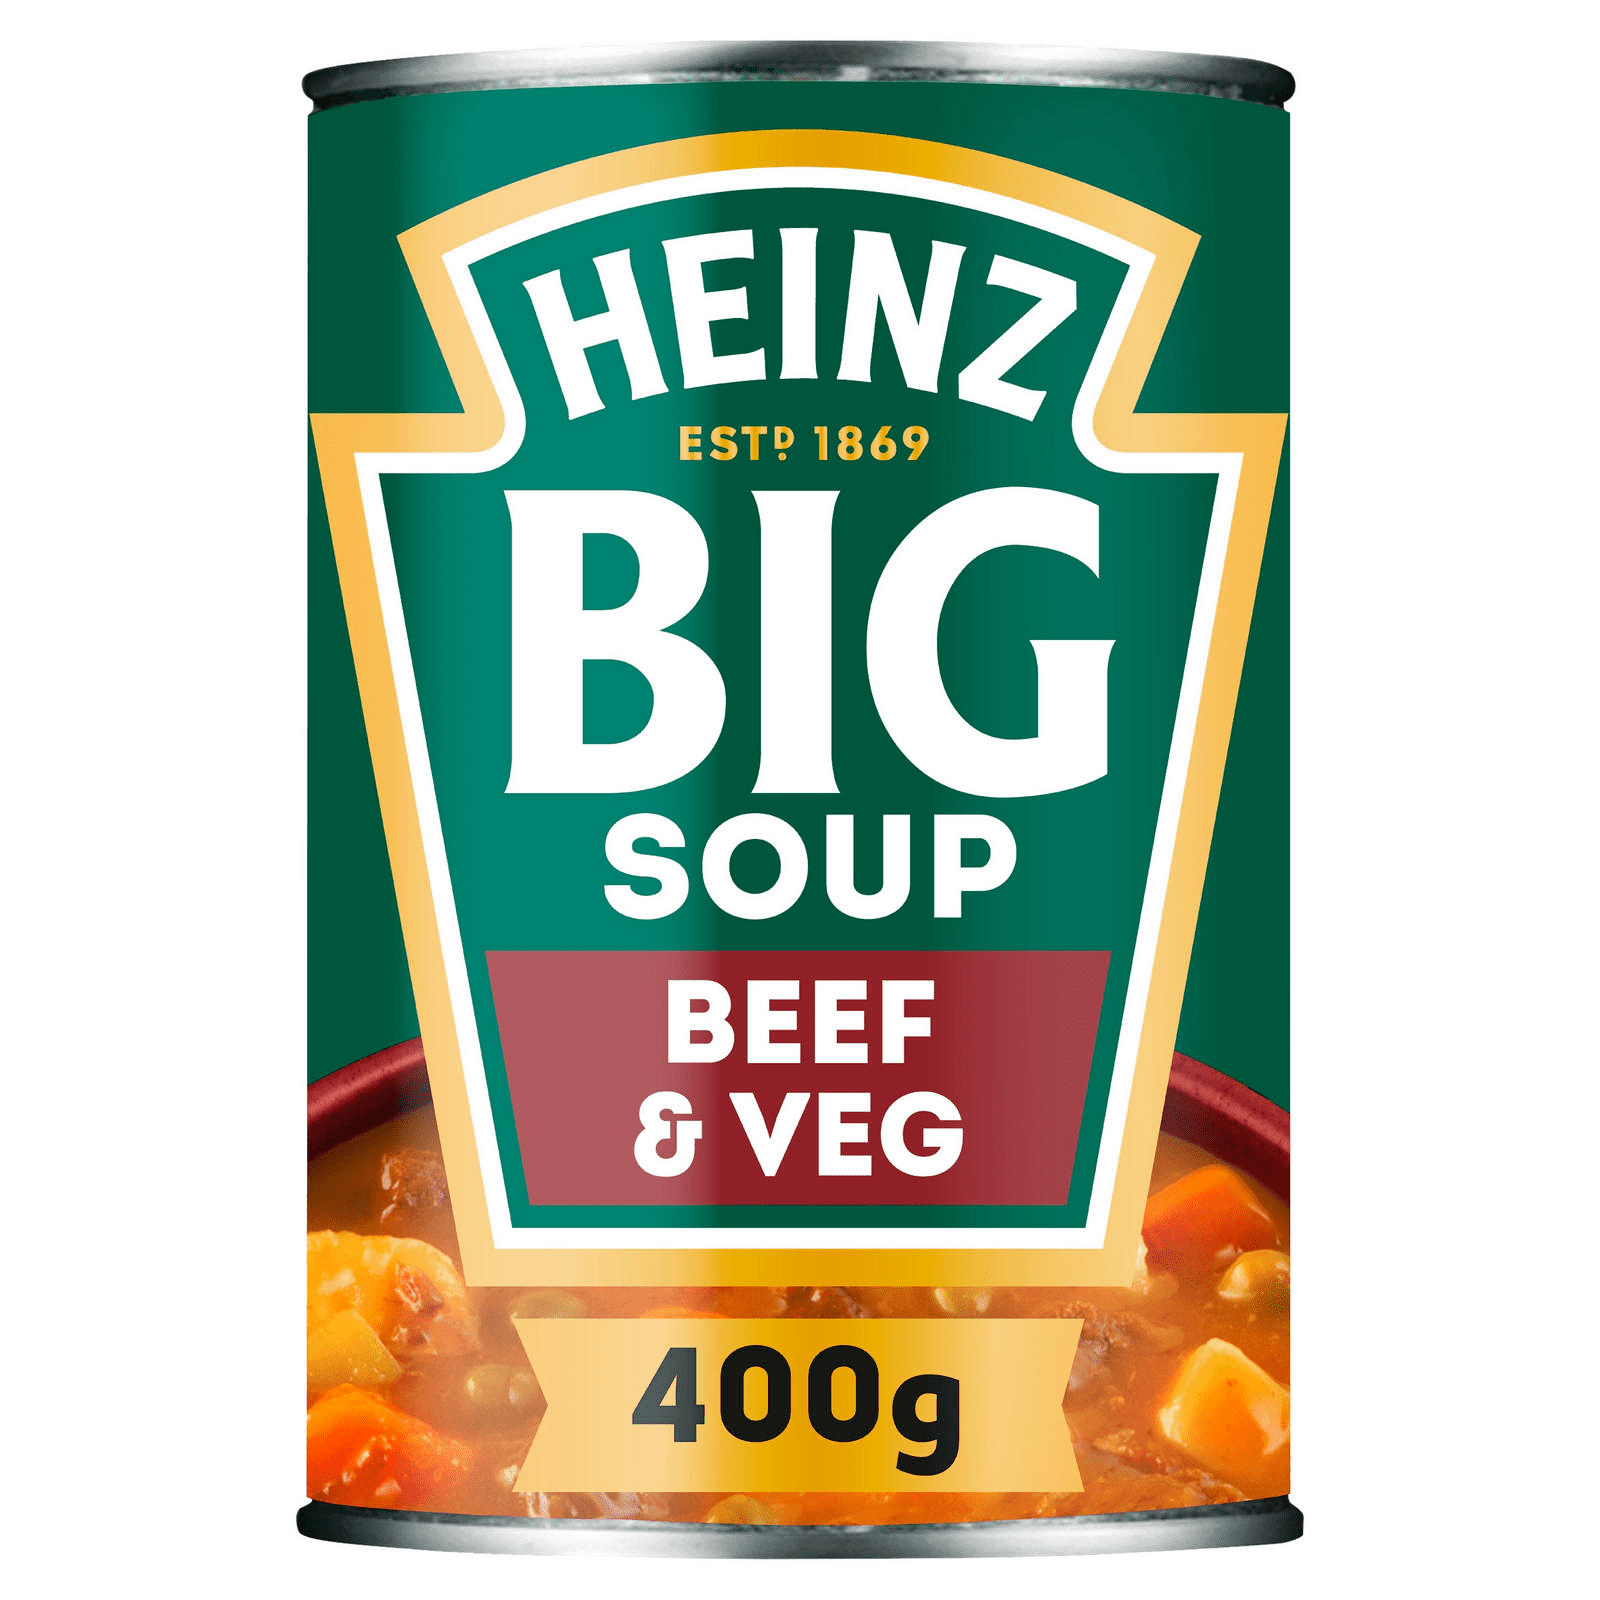 Heinz Big Beef & Vegetable Soup 400g